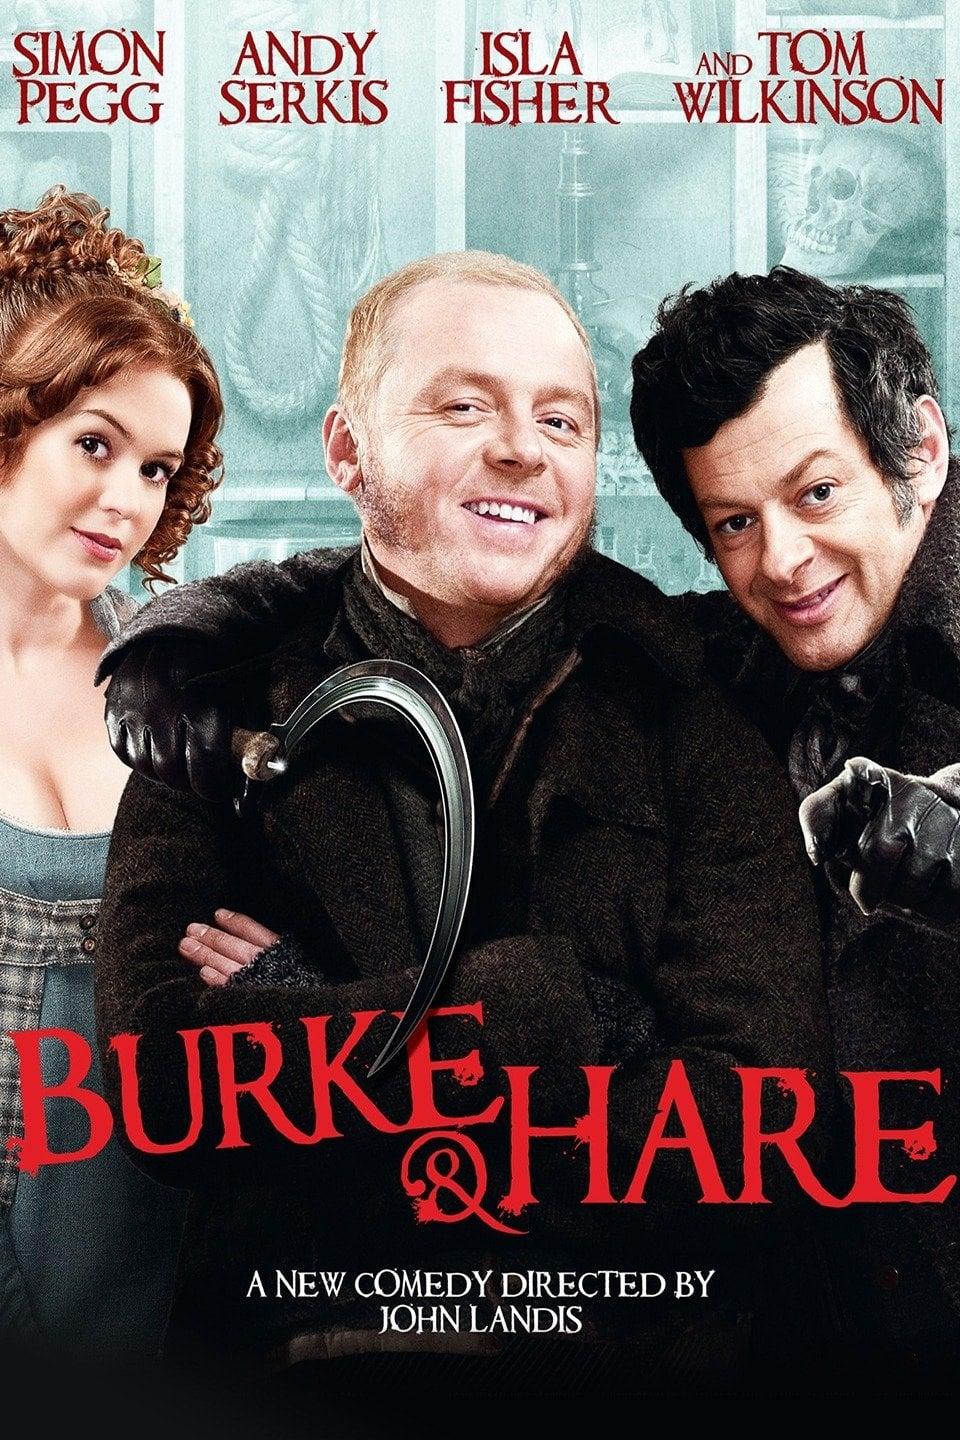 Burke & Hare poster